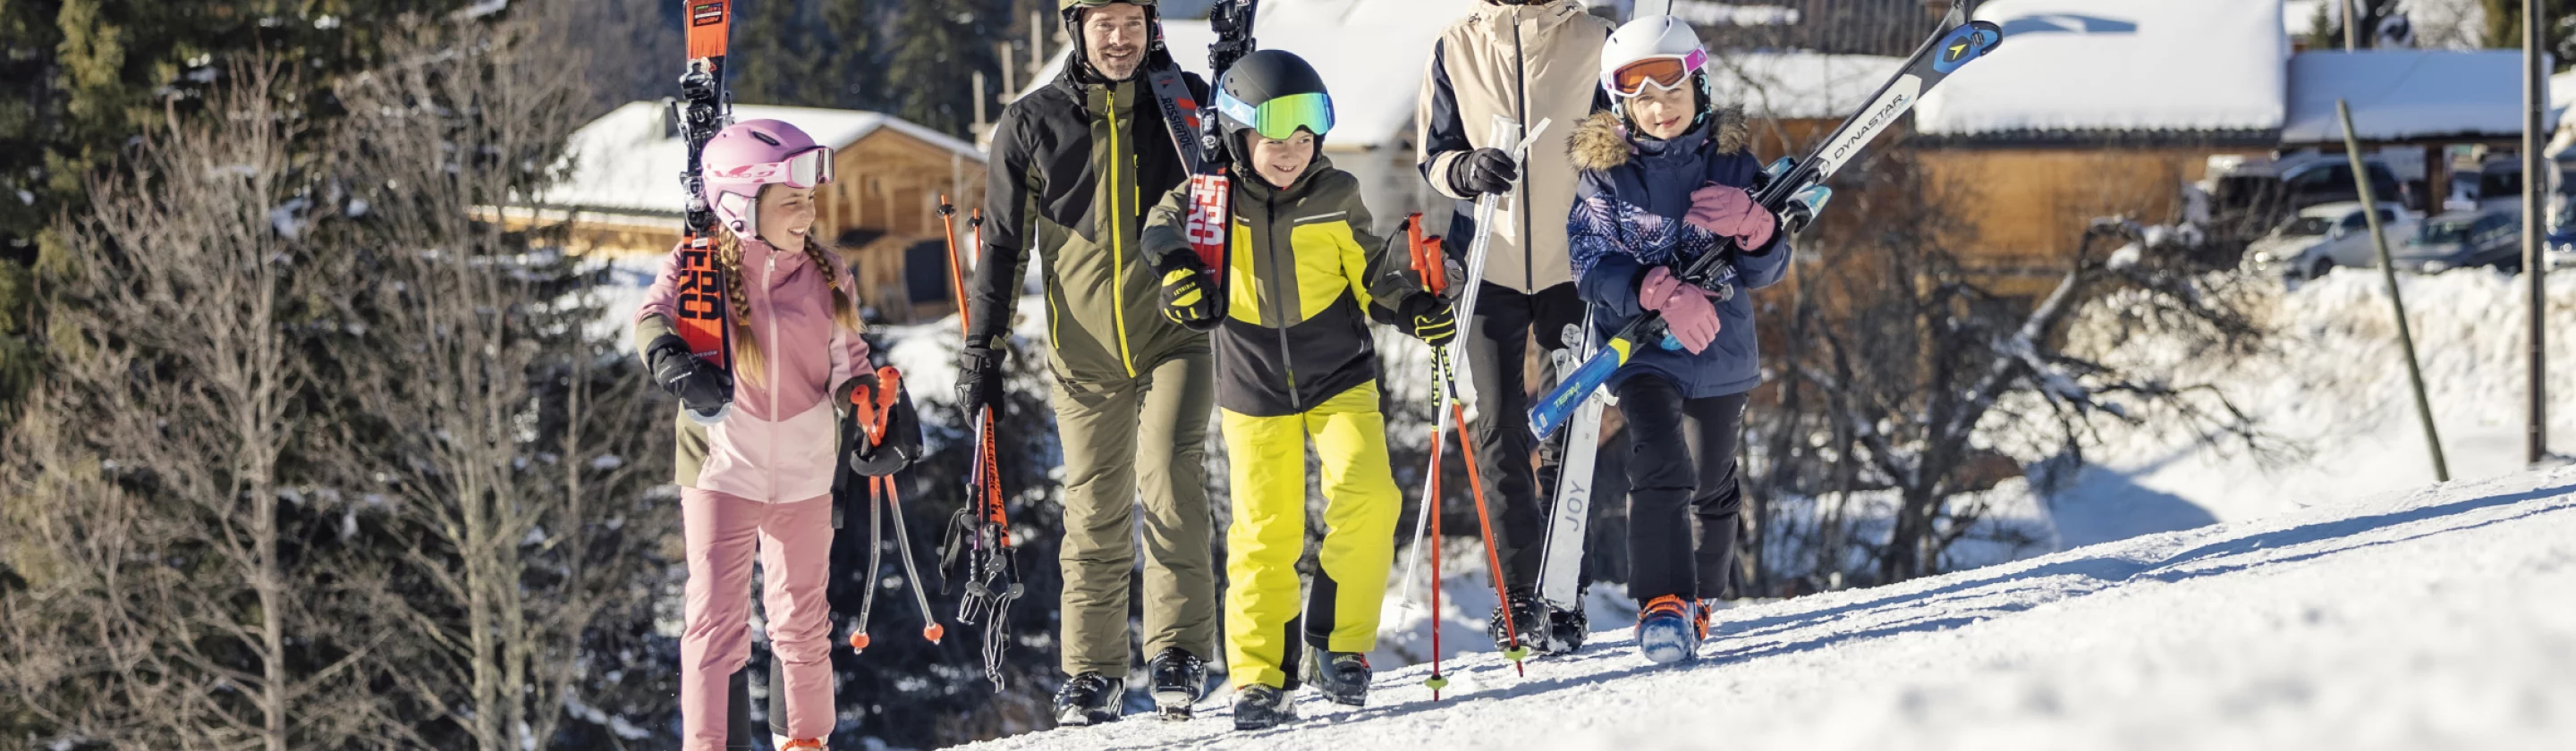 Bonnet de ski Enfant Rossignol typé course de ski pas cher